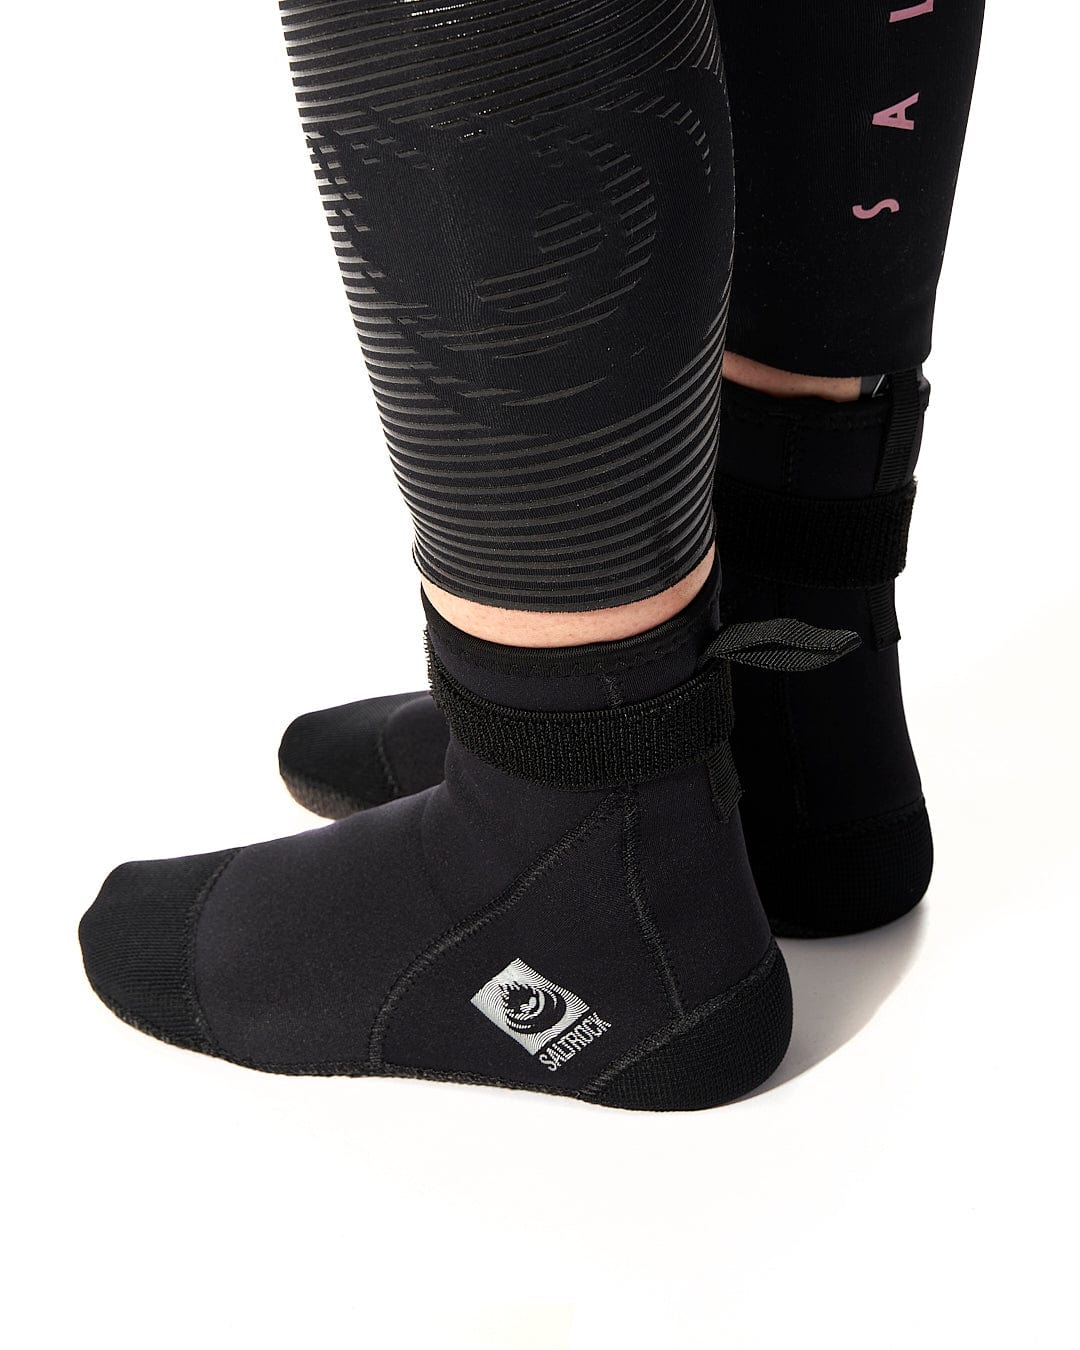 A woman wearing a pair of Saltrock Core - Wetsuit Boot - Black neoprene socks.